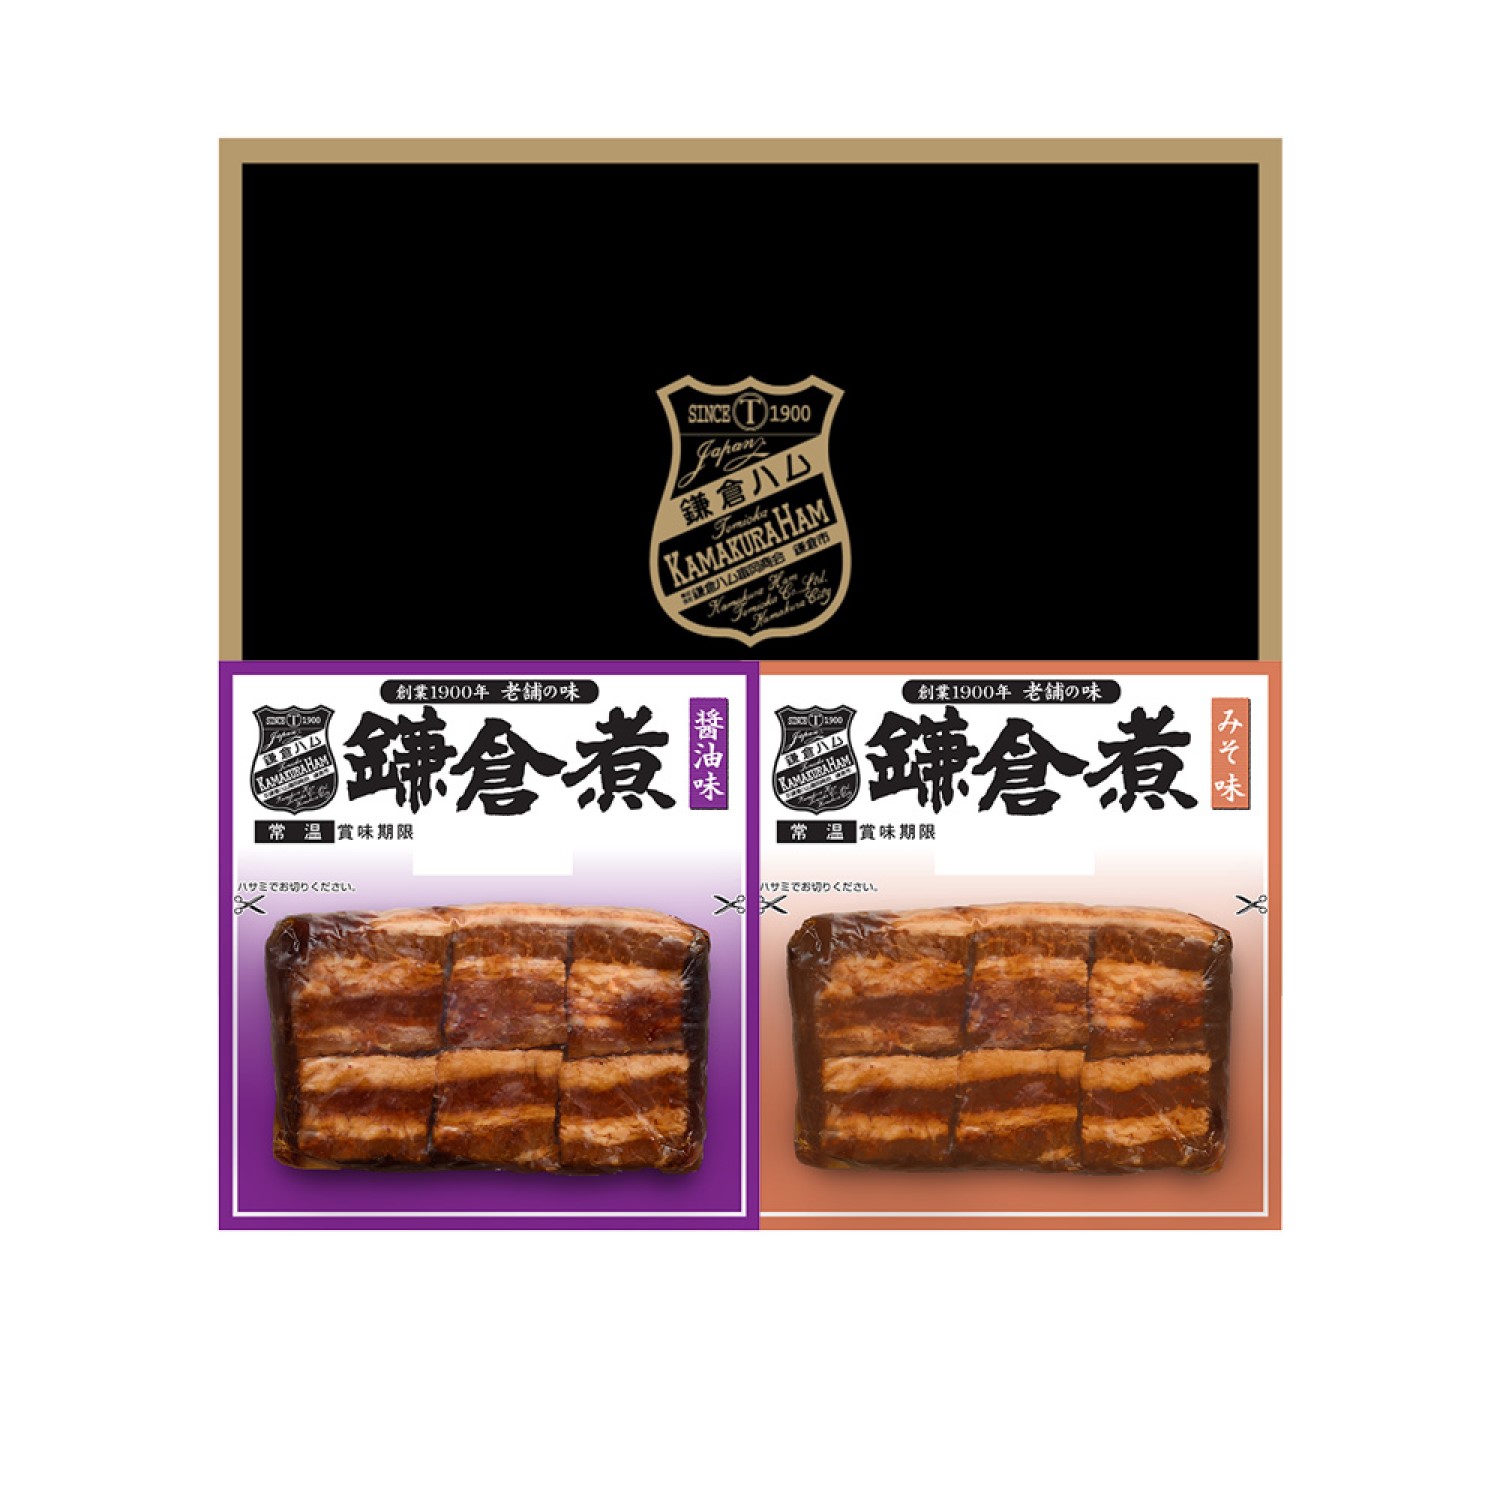 鎌倉ハム富岡商会 鎌倉煮 醤油味 162g ×2袋